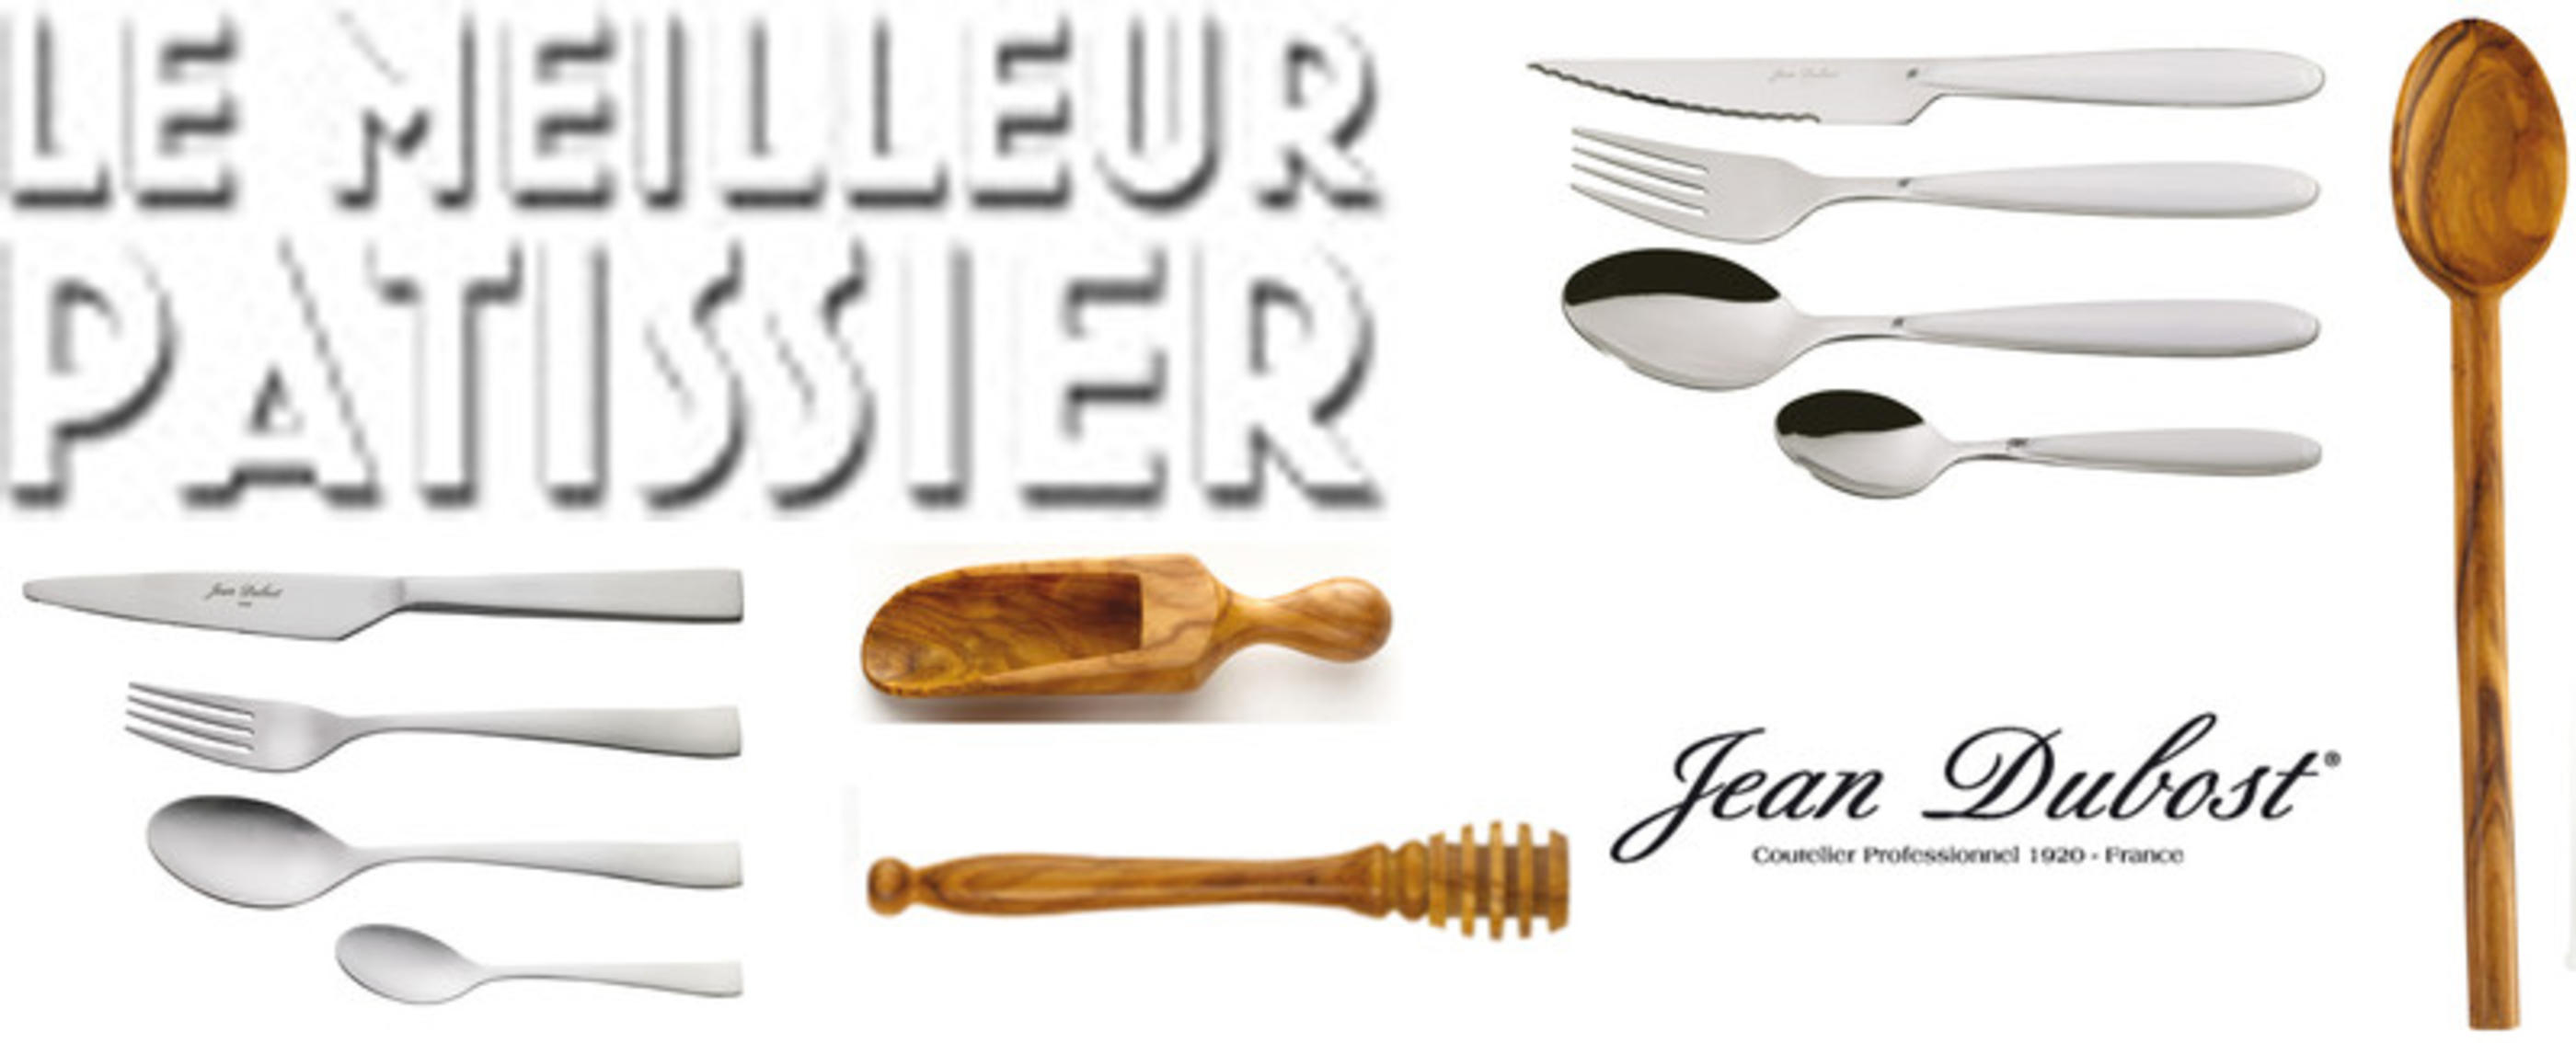 Jean Dubost renouvelle son partenariat avec l’émission «LE MEILLEUR PATISSIER»